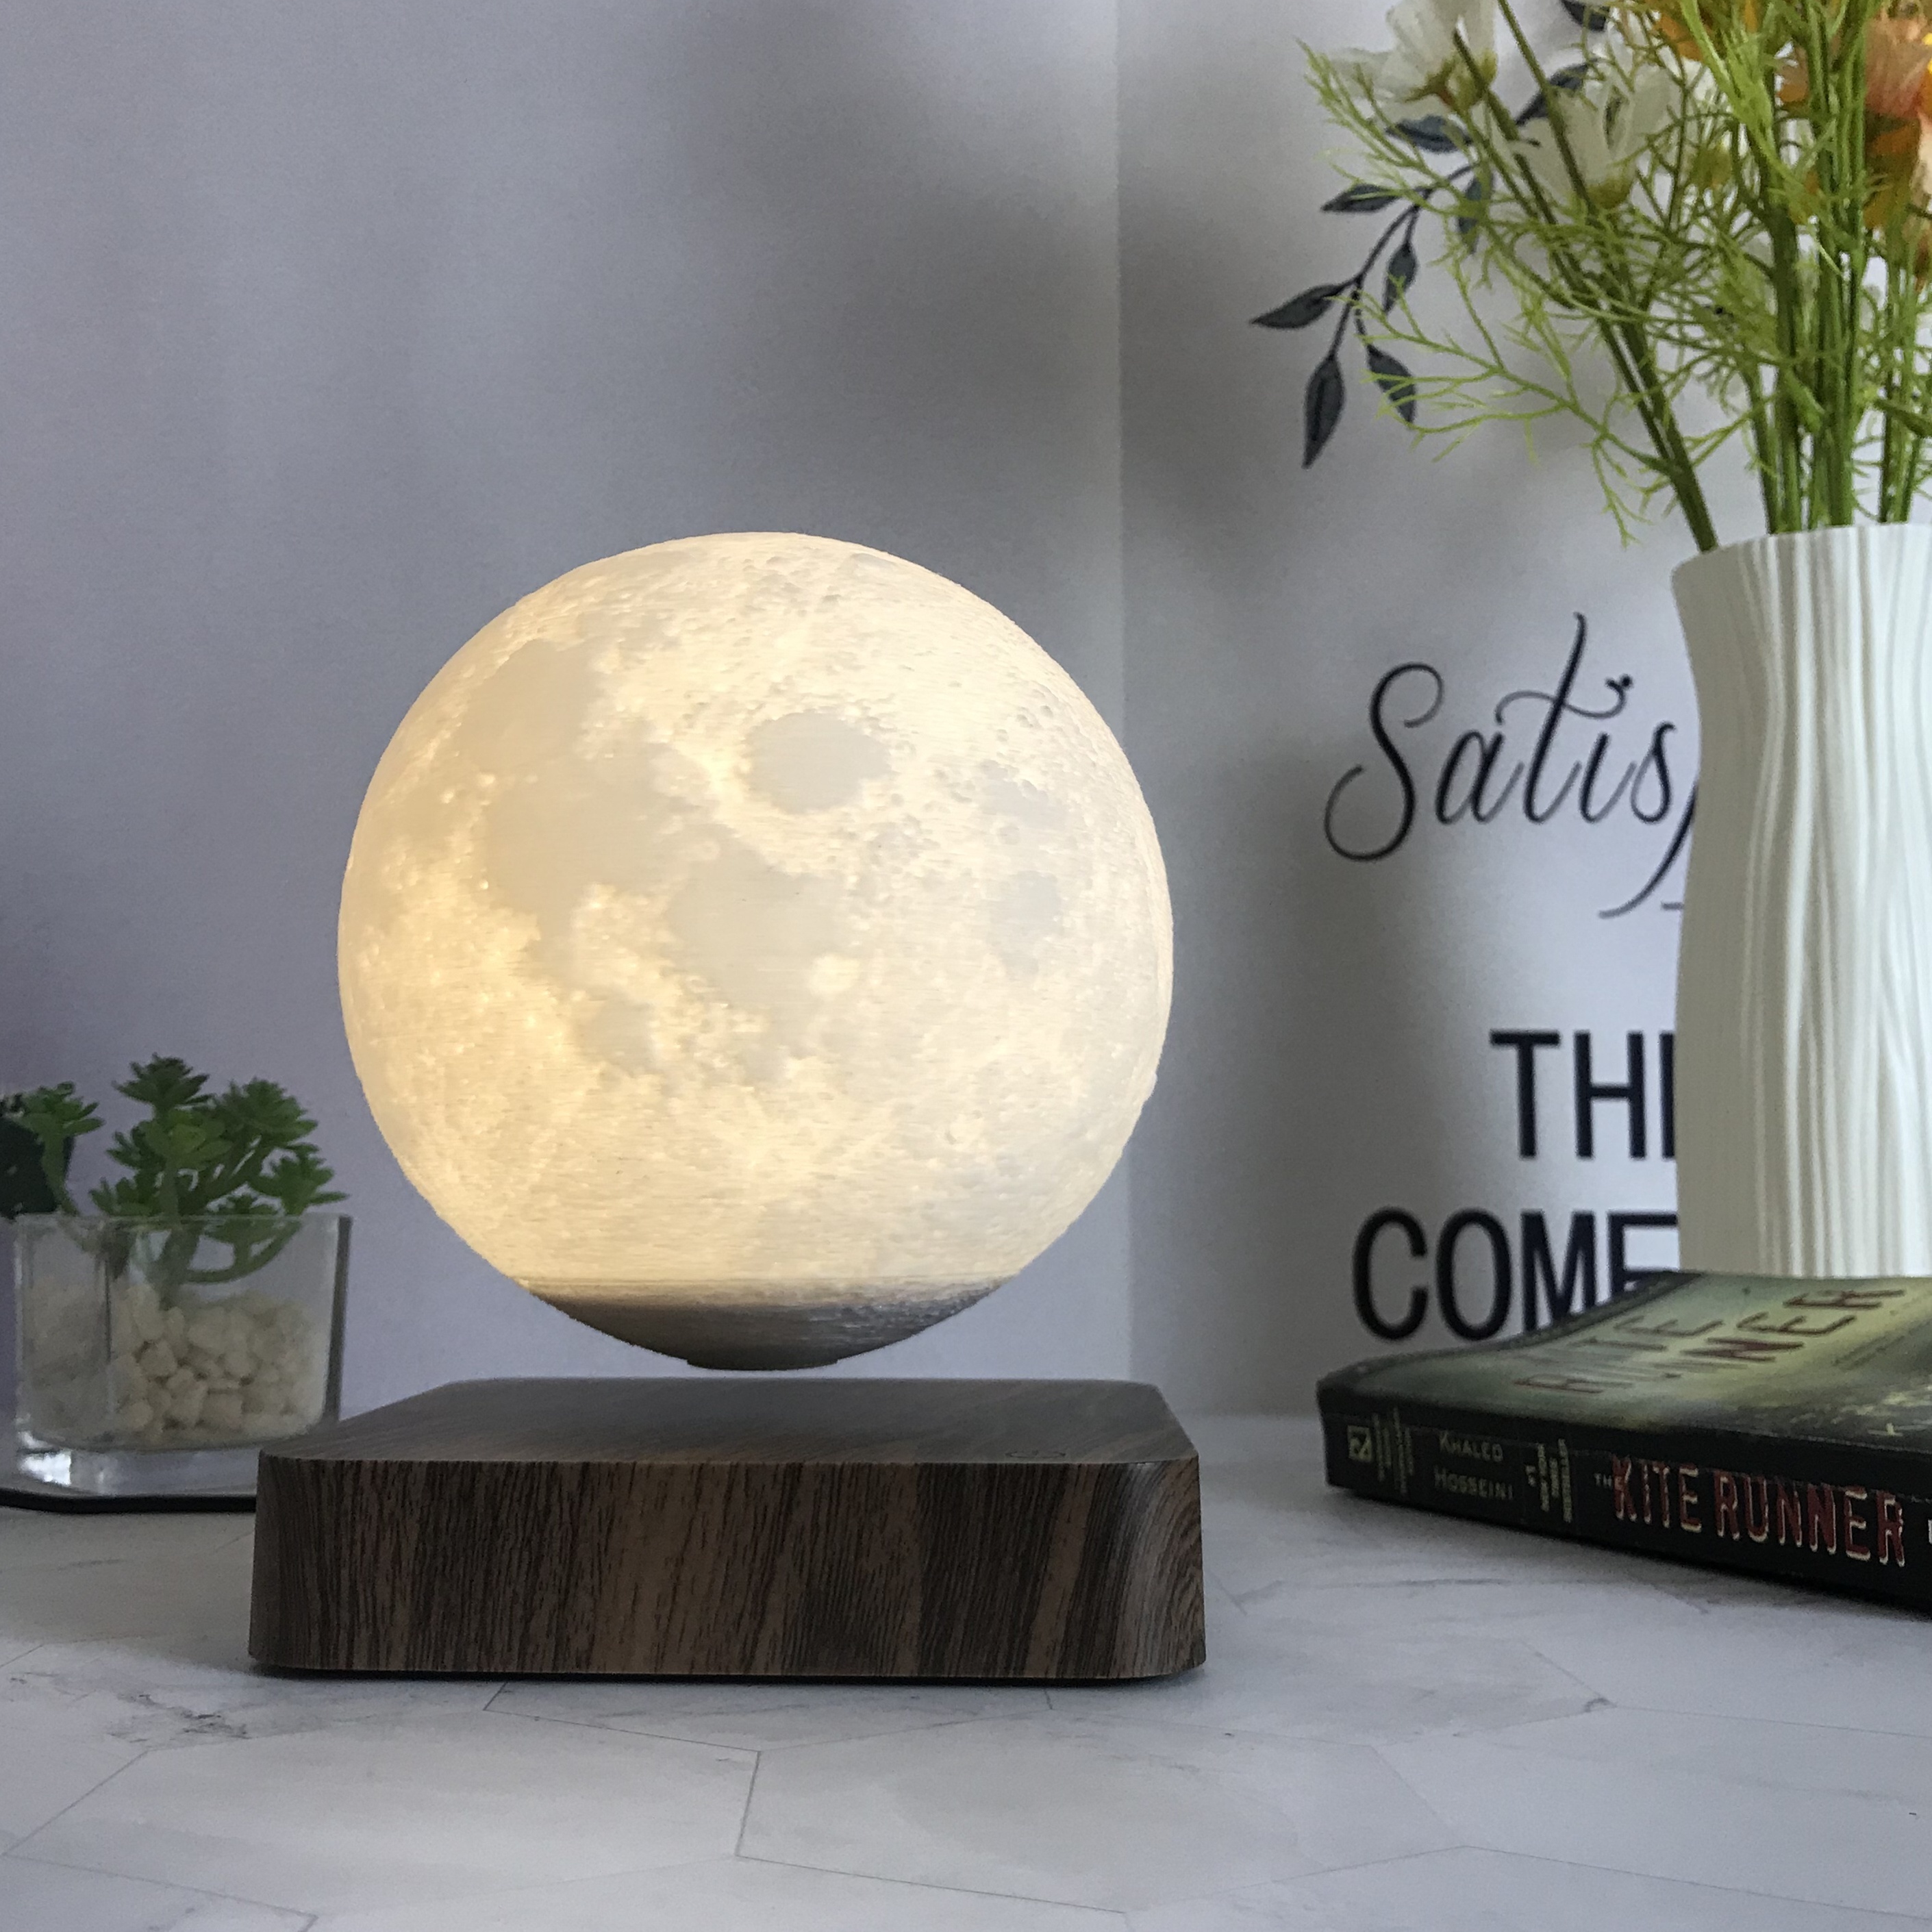 🌕🌕🌕 Lampara luna 3D realista con base de madera 🌕🌕🌕 ✓Mágica y  encantadora lámpara de luz nocturna, con hermoso diseño realista de luna…